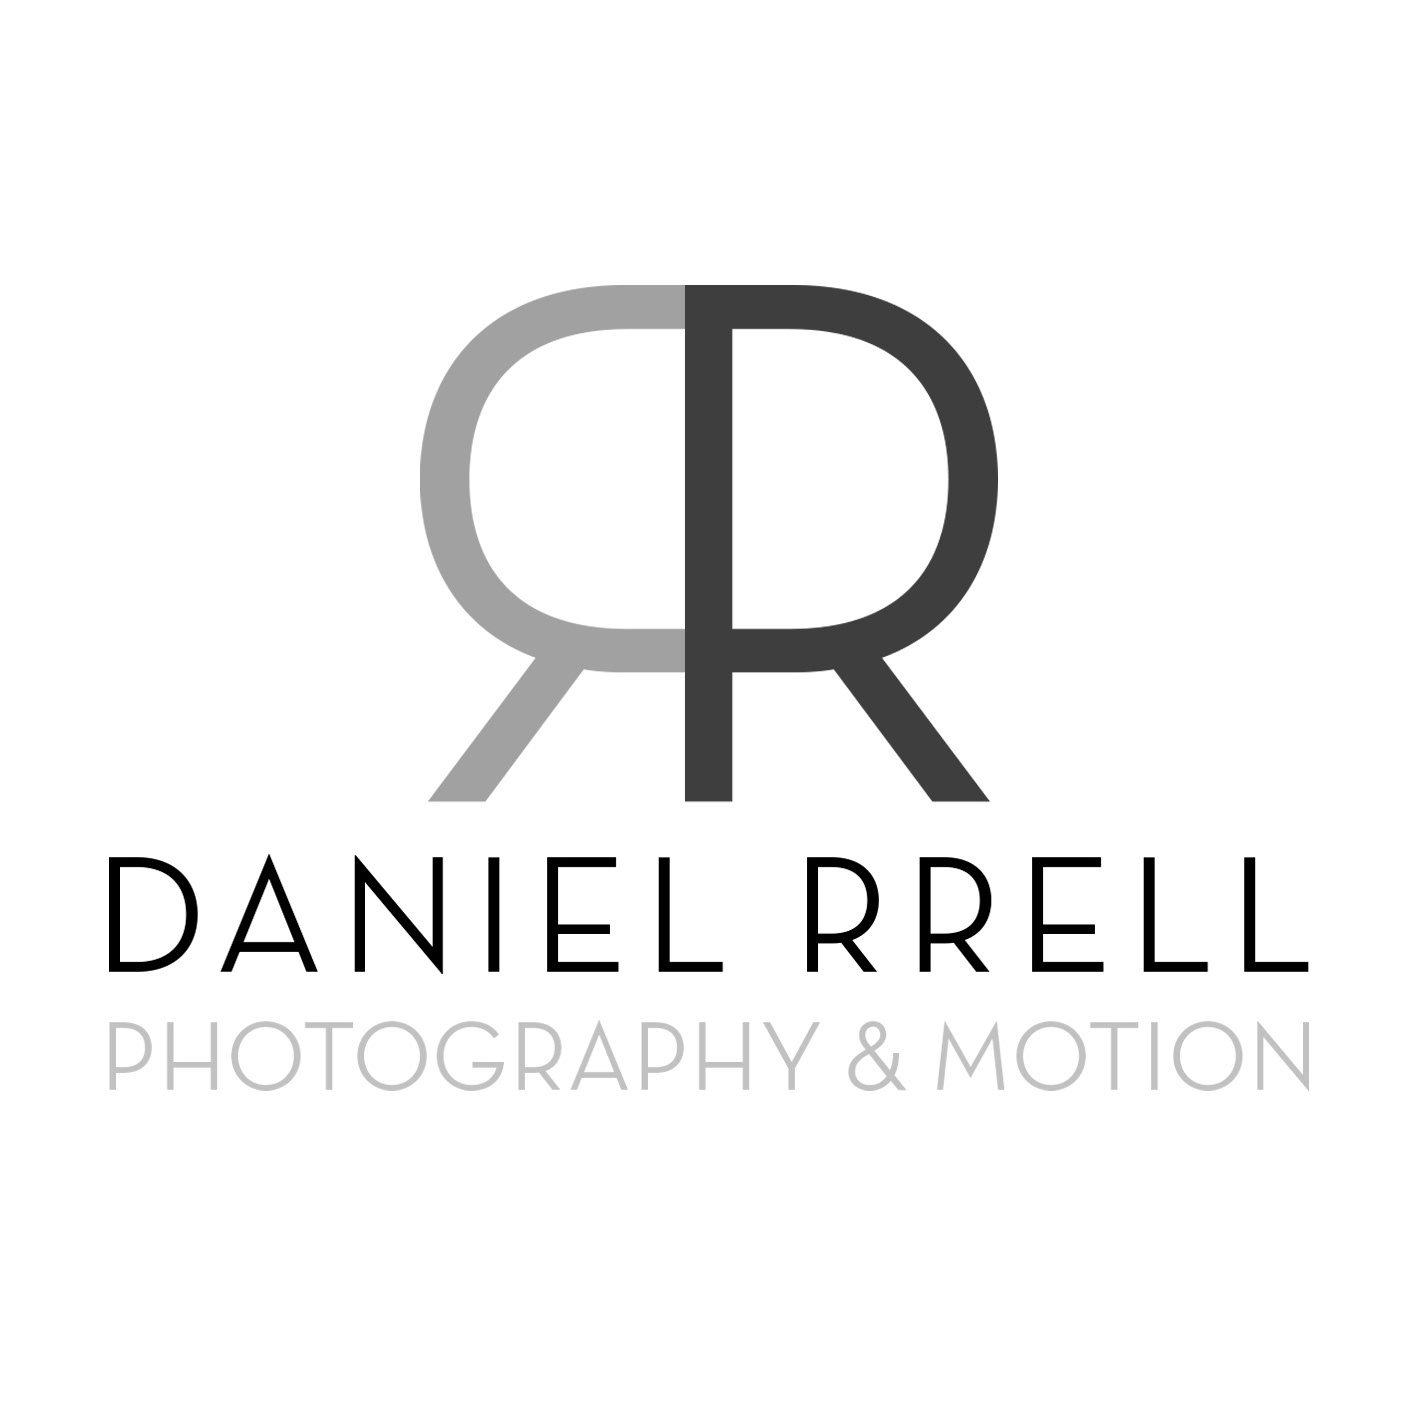 Daniel Rrell